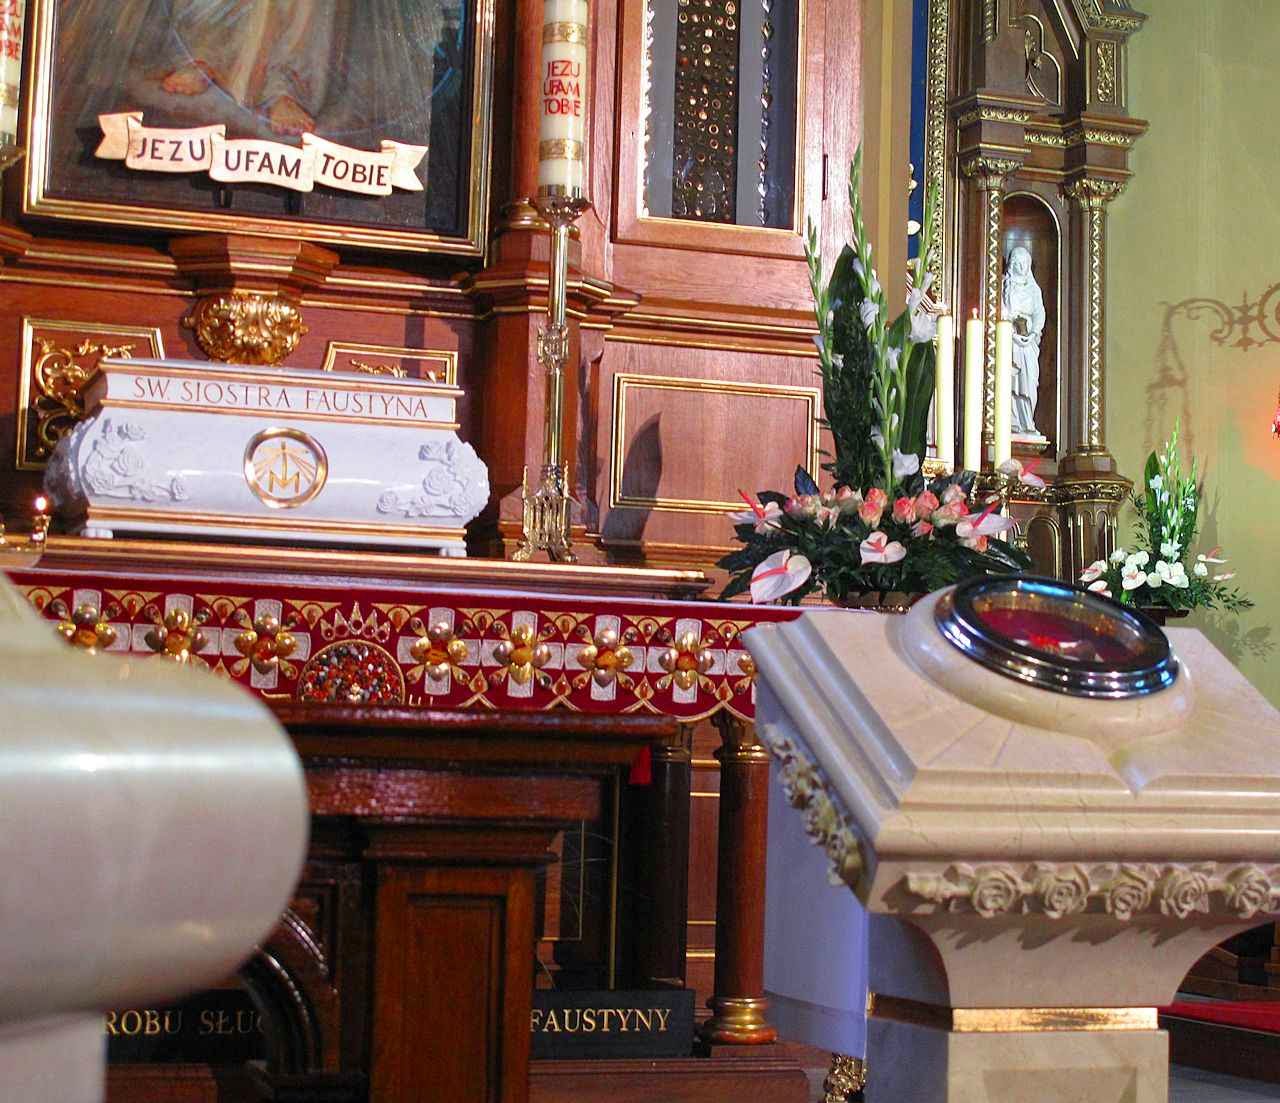 Urna e relíquia de Santa Faustina. Santuário da Divina Misericórdia, Cracóvia, Polônia.